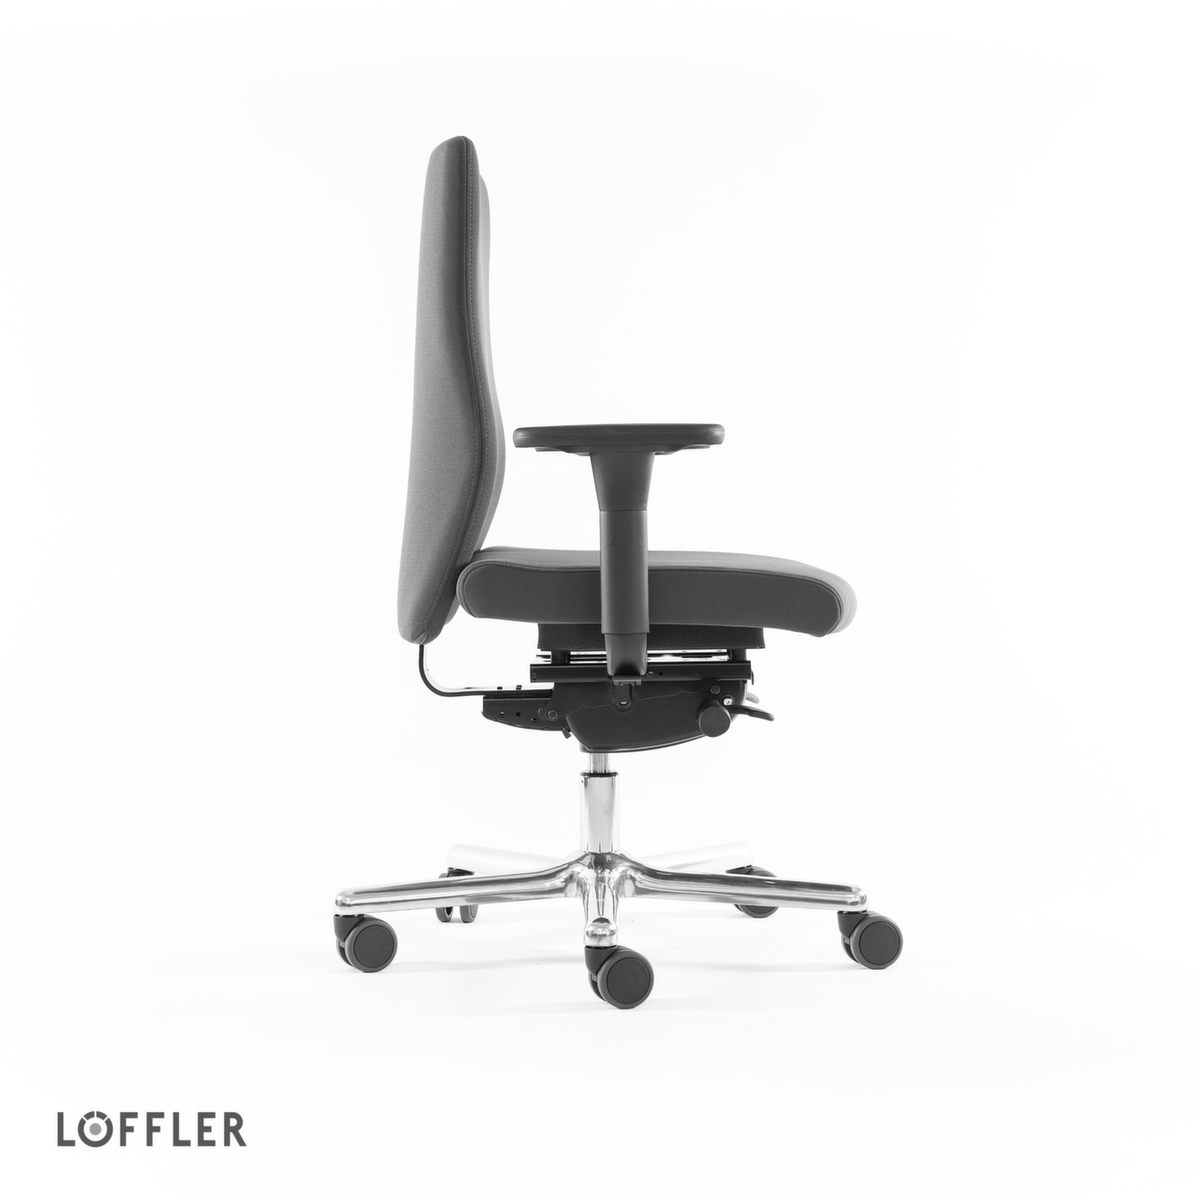 Löffler Bürodrehstuhl mit viskoelastischem Sitz, grau Standard 3 ZOOM